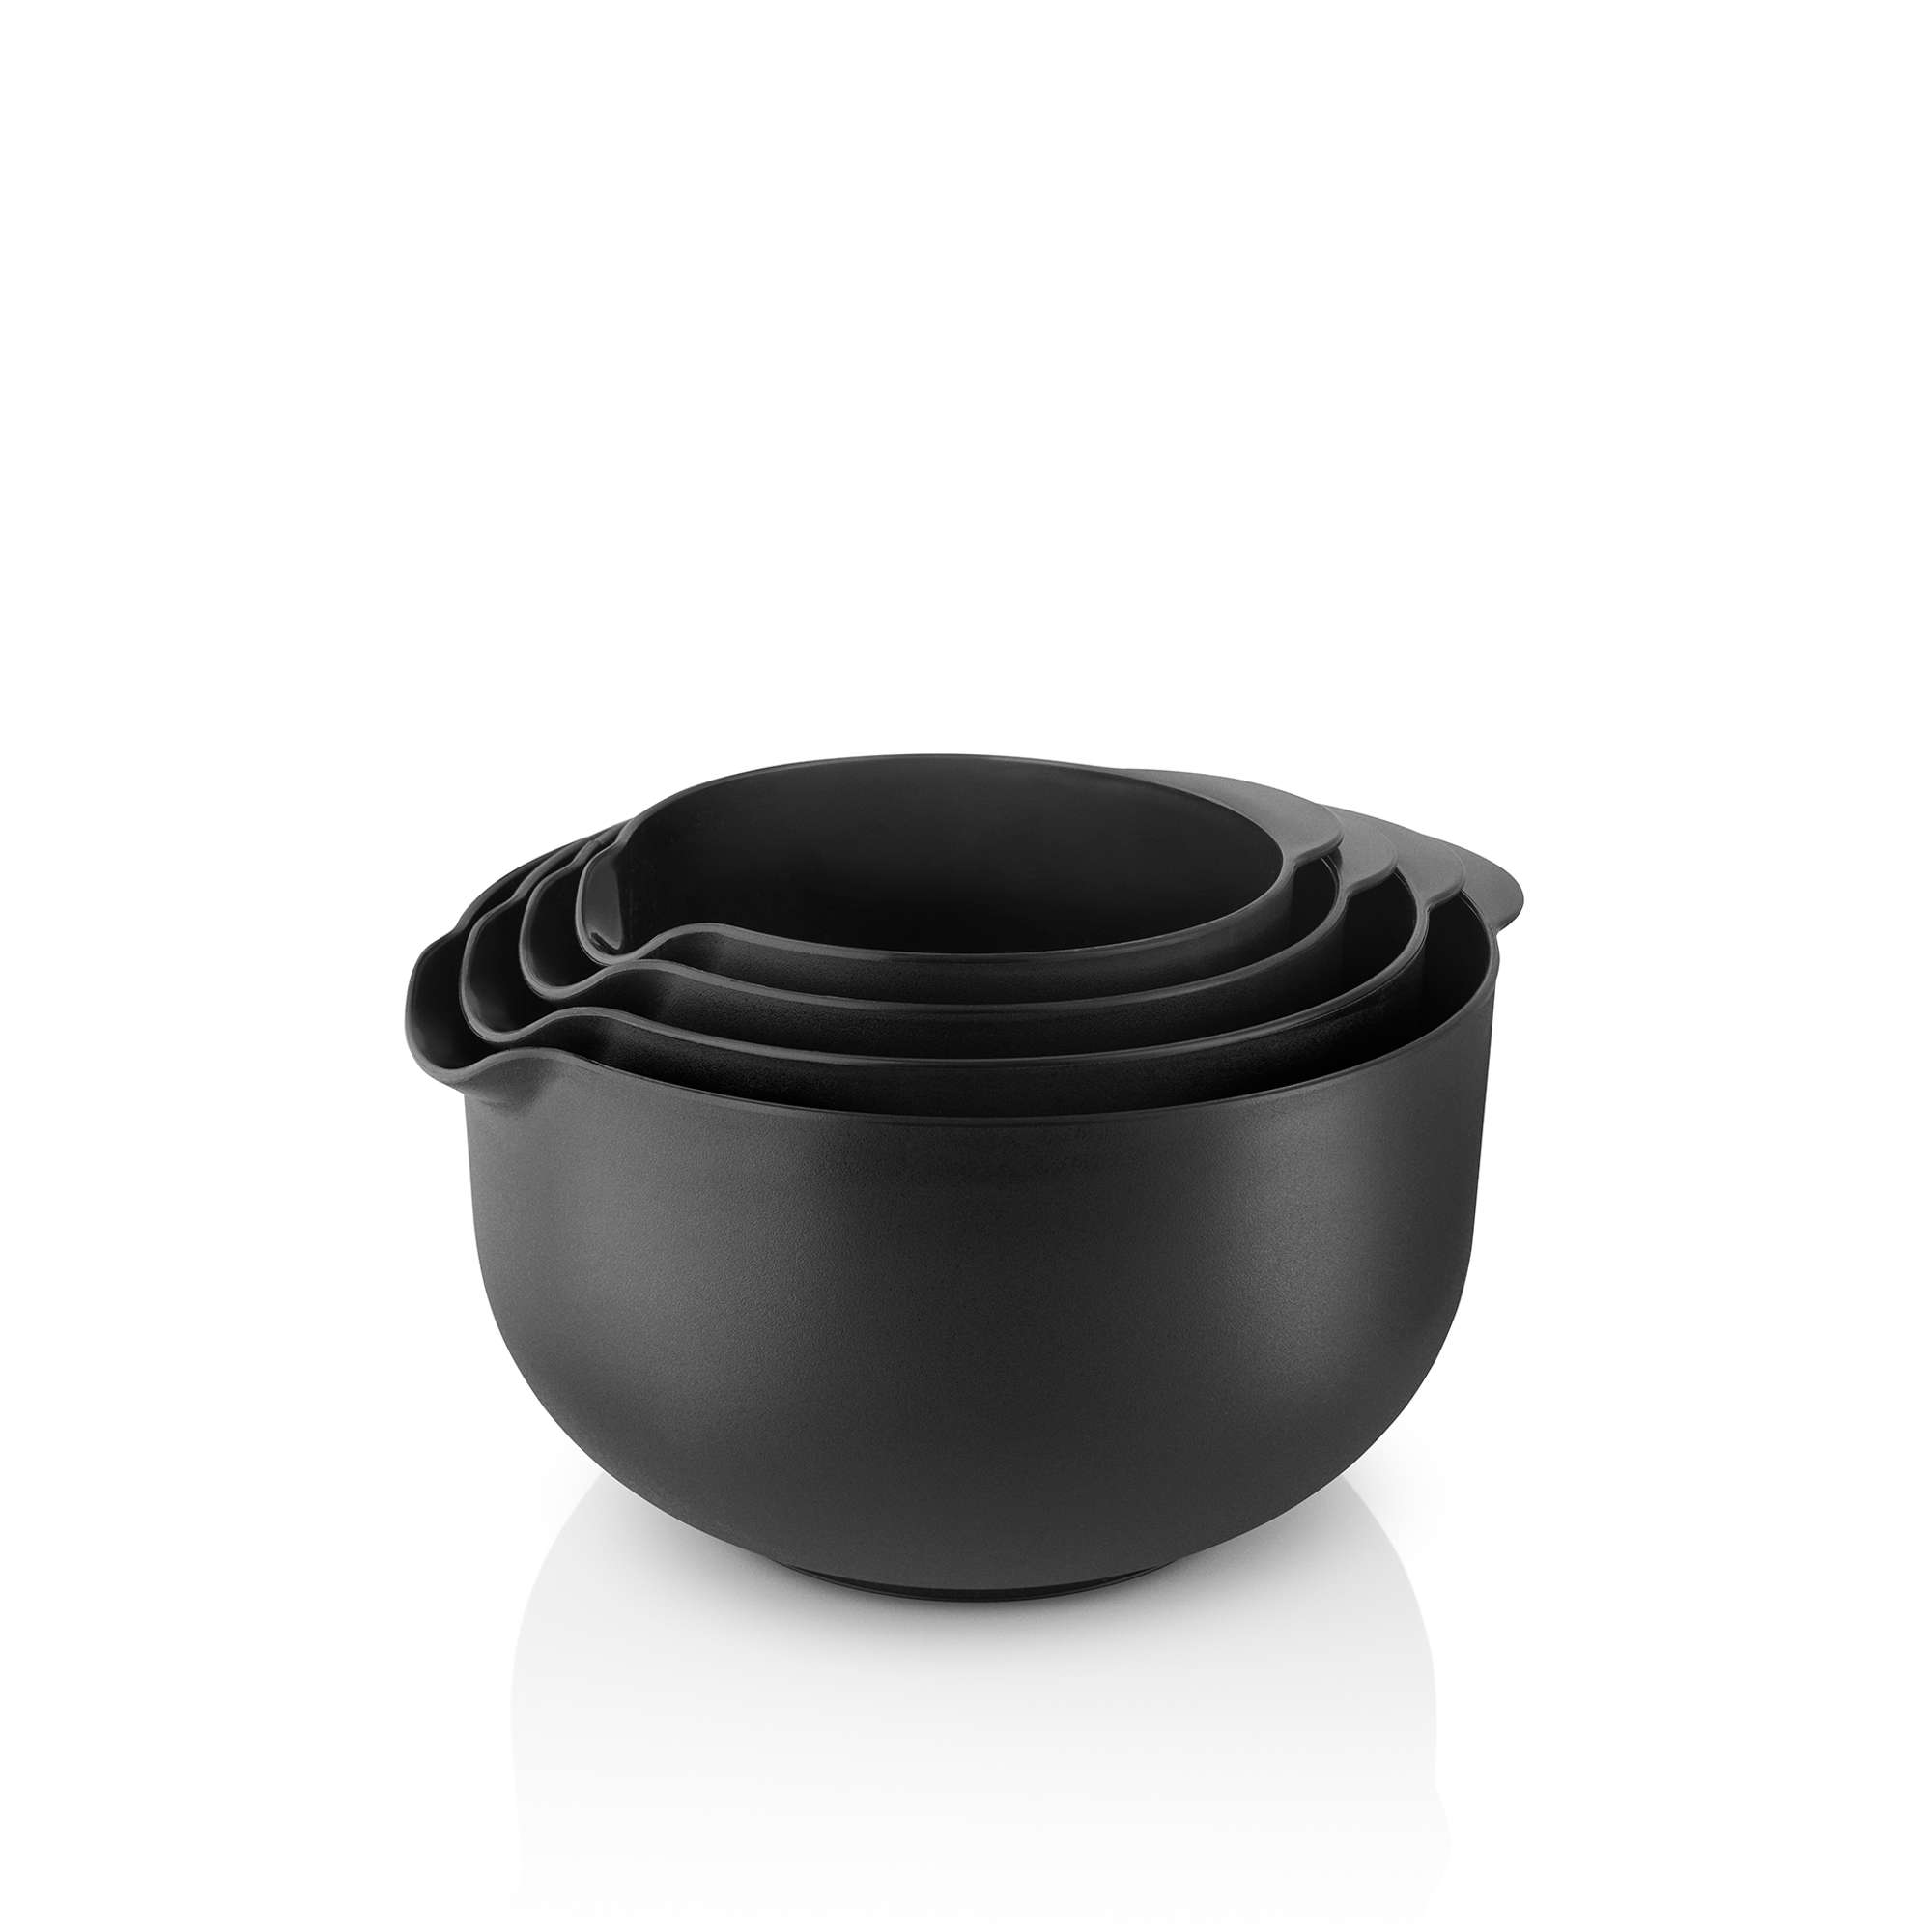 Eva mixing bowl set - 4 pcs - Black